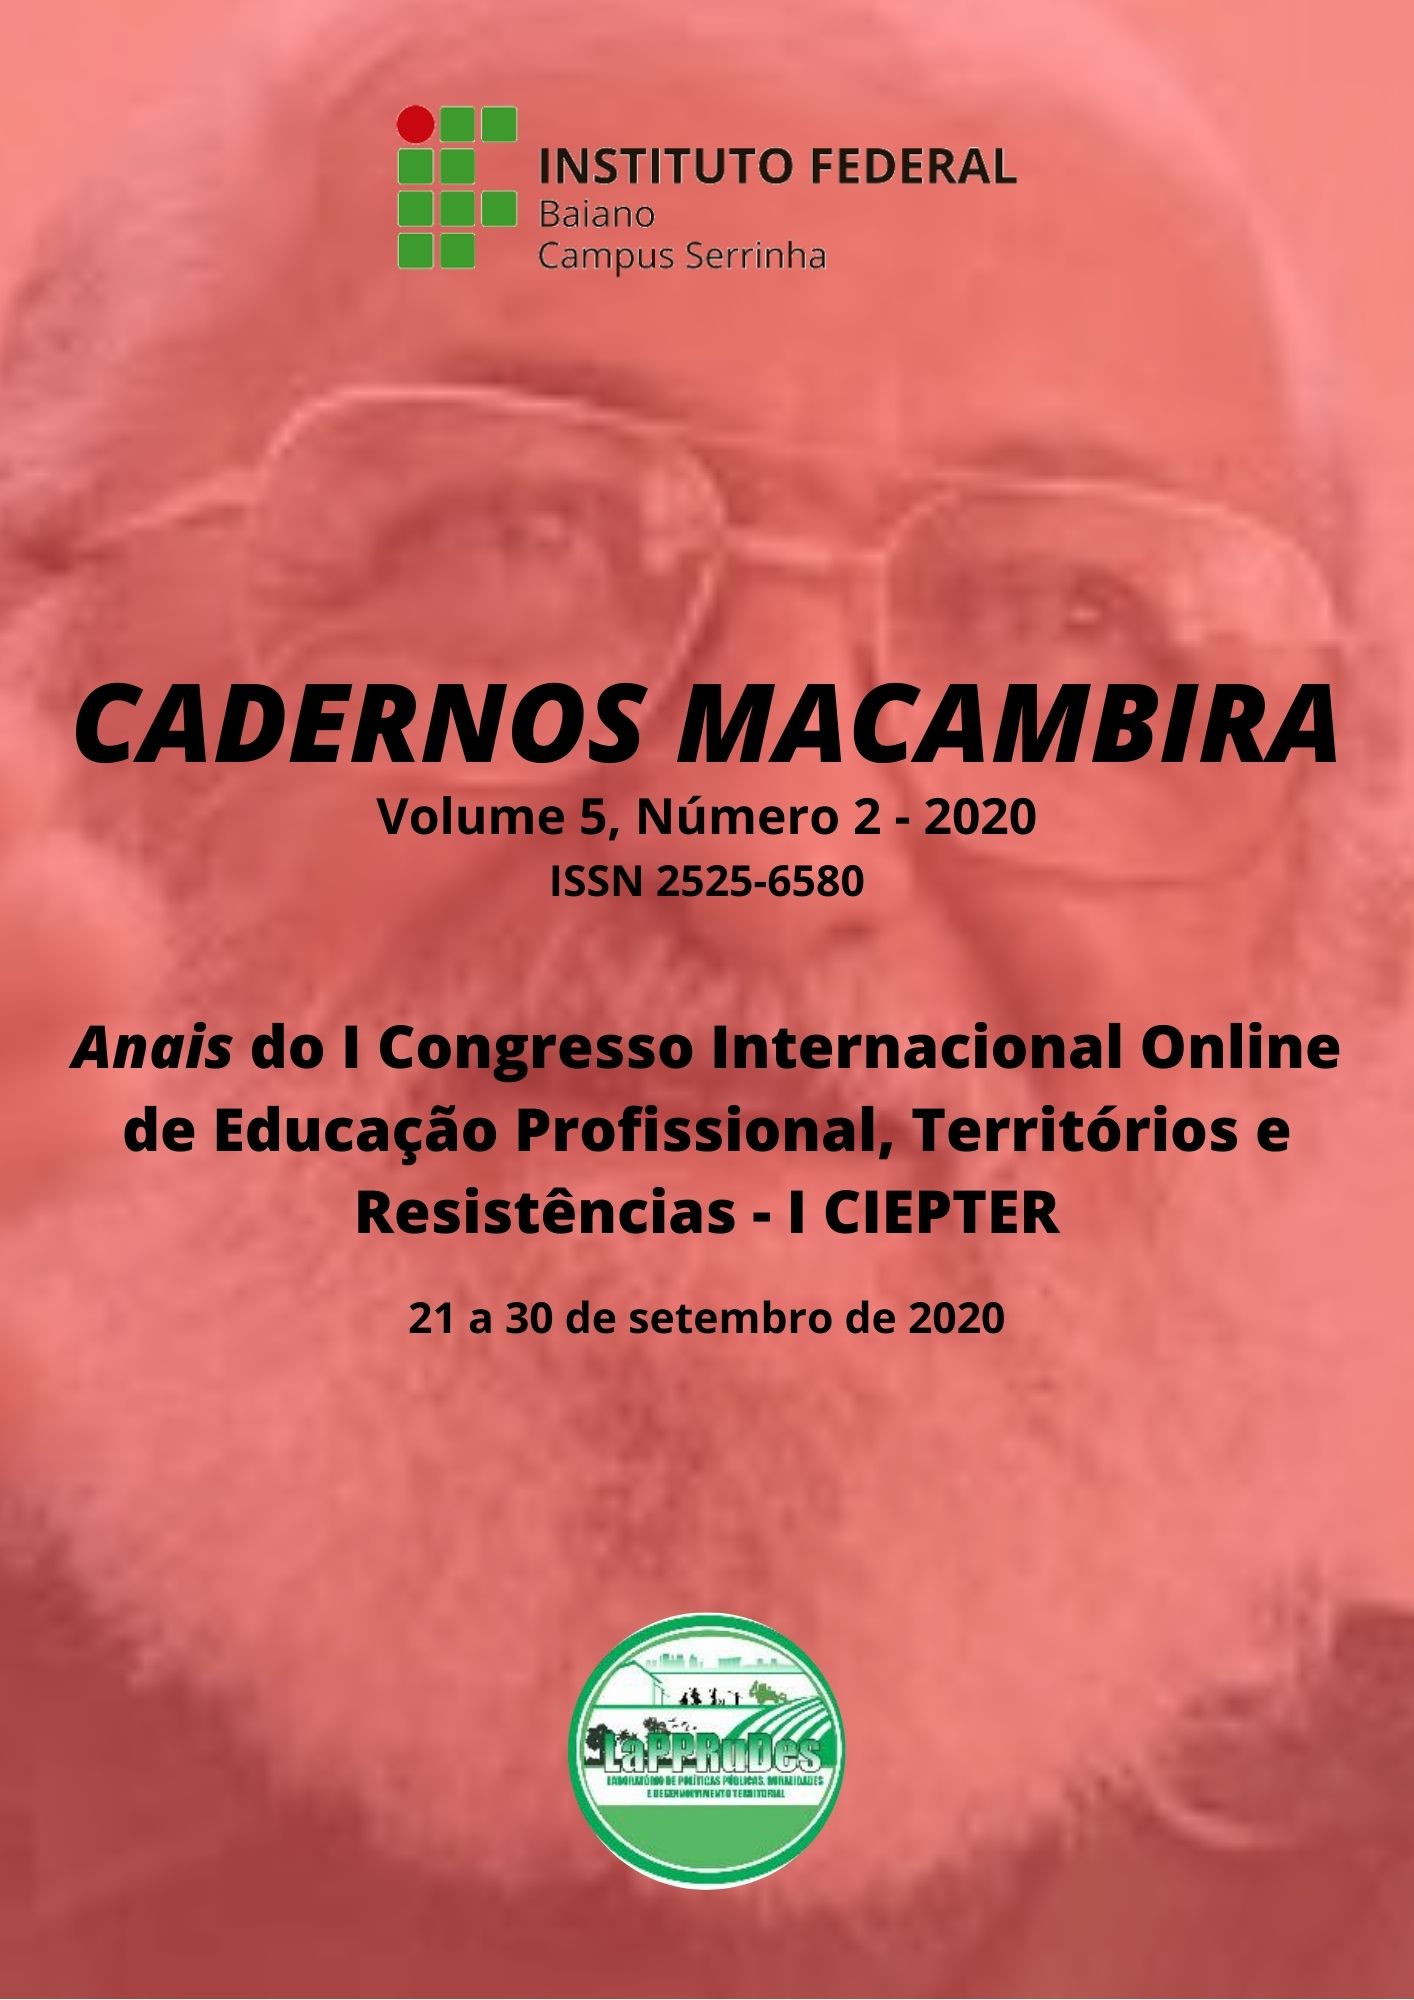 					Ver Vol. 5 Núm. 2 (2020): Cadernos Macambira: Anais do I Congresso Internacional Online de Educação Profissional, Territórios e Resistências - I CIEPTER
				